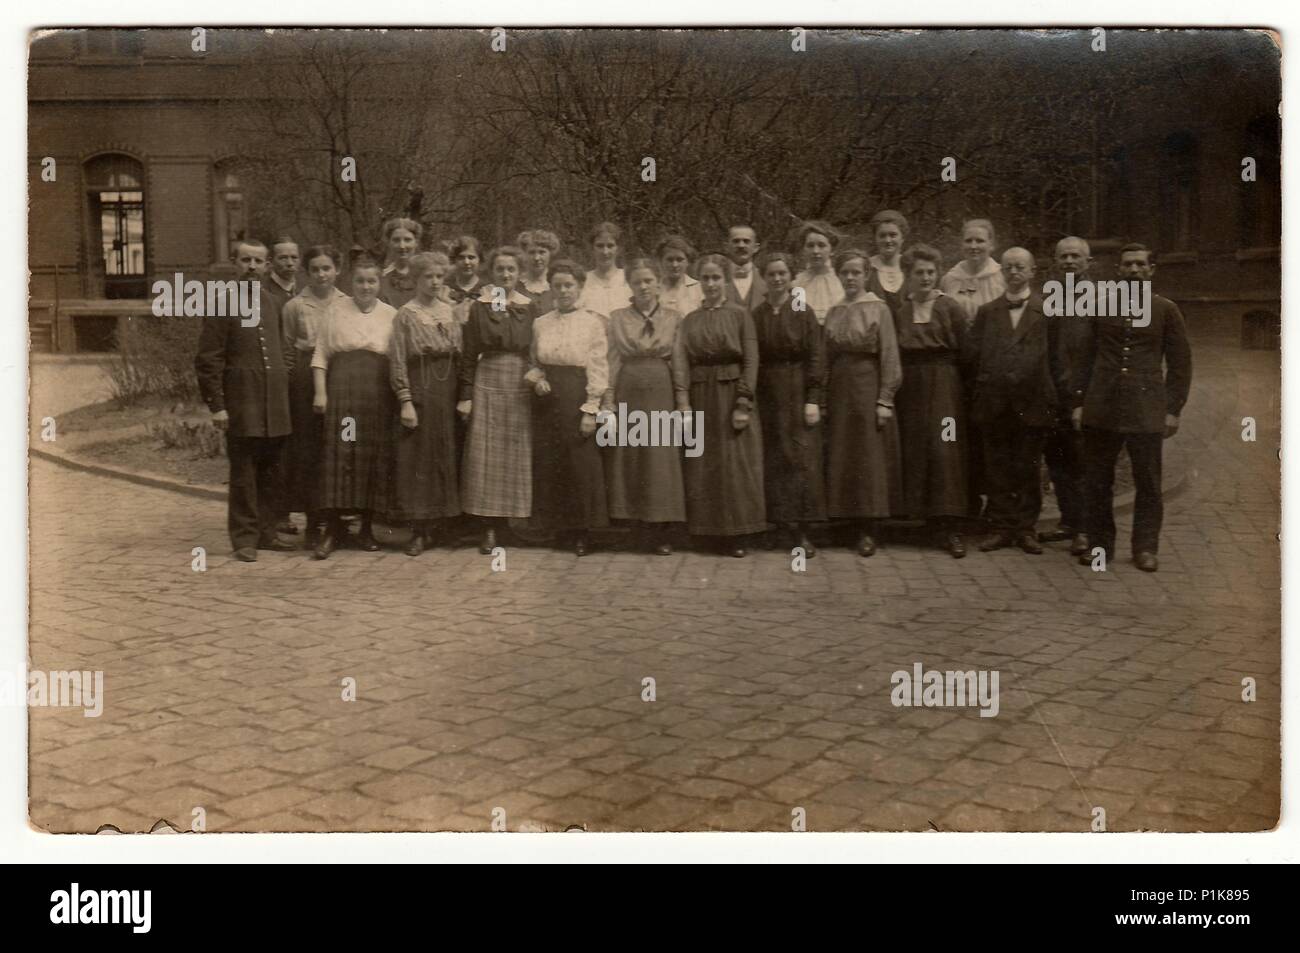 DEUTSCHLAND - UM 1920s: Ein Vintage-Foto zeigt eine große Gruppe von Menschen, die draußen posieren. Schwarze & weiße antike Fotografie. 1920s Stockfoto